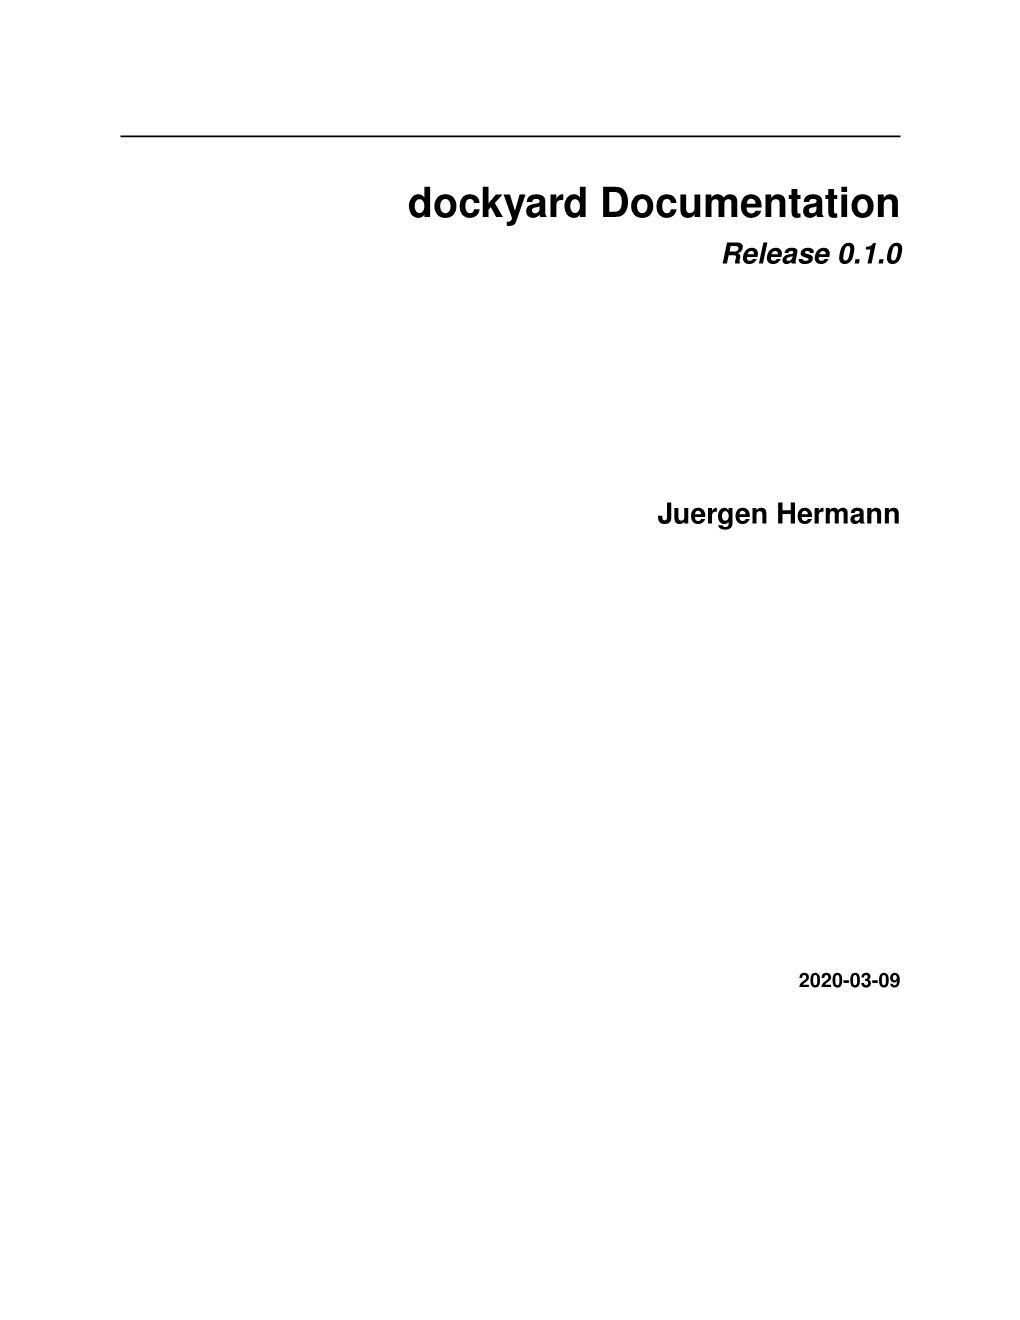 Dockyard Documentation Release 0.1.0